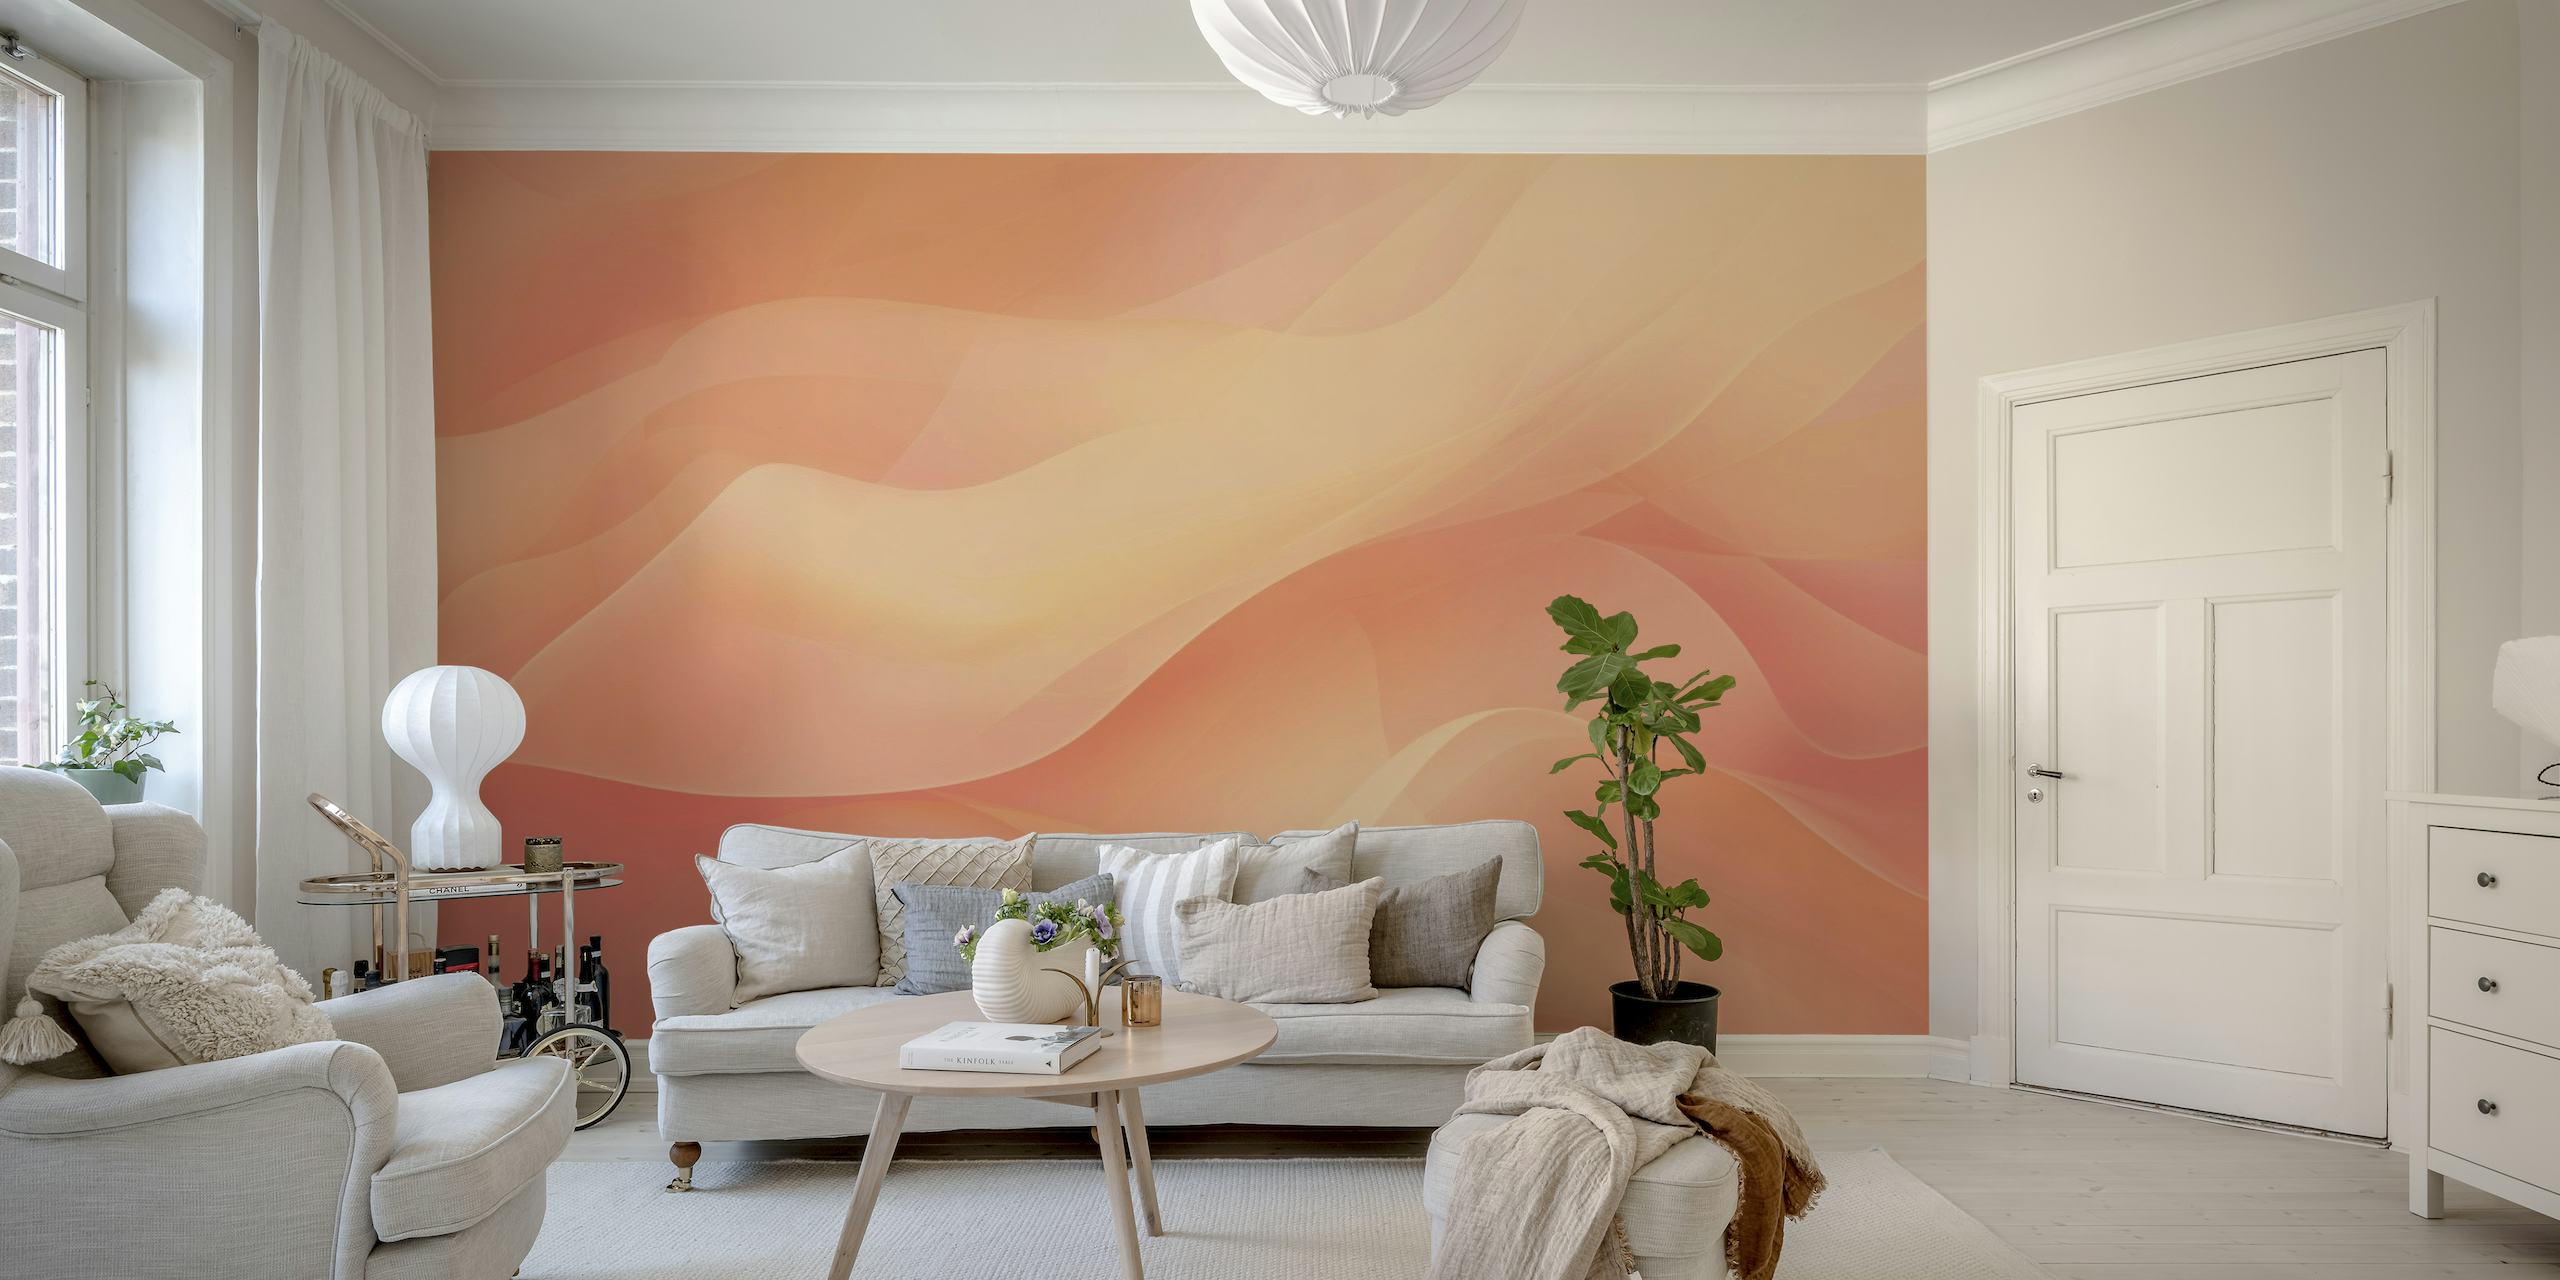 Peach Fuzz Ethereal Calm Abstract papel pintado